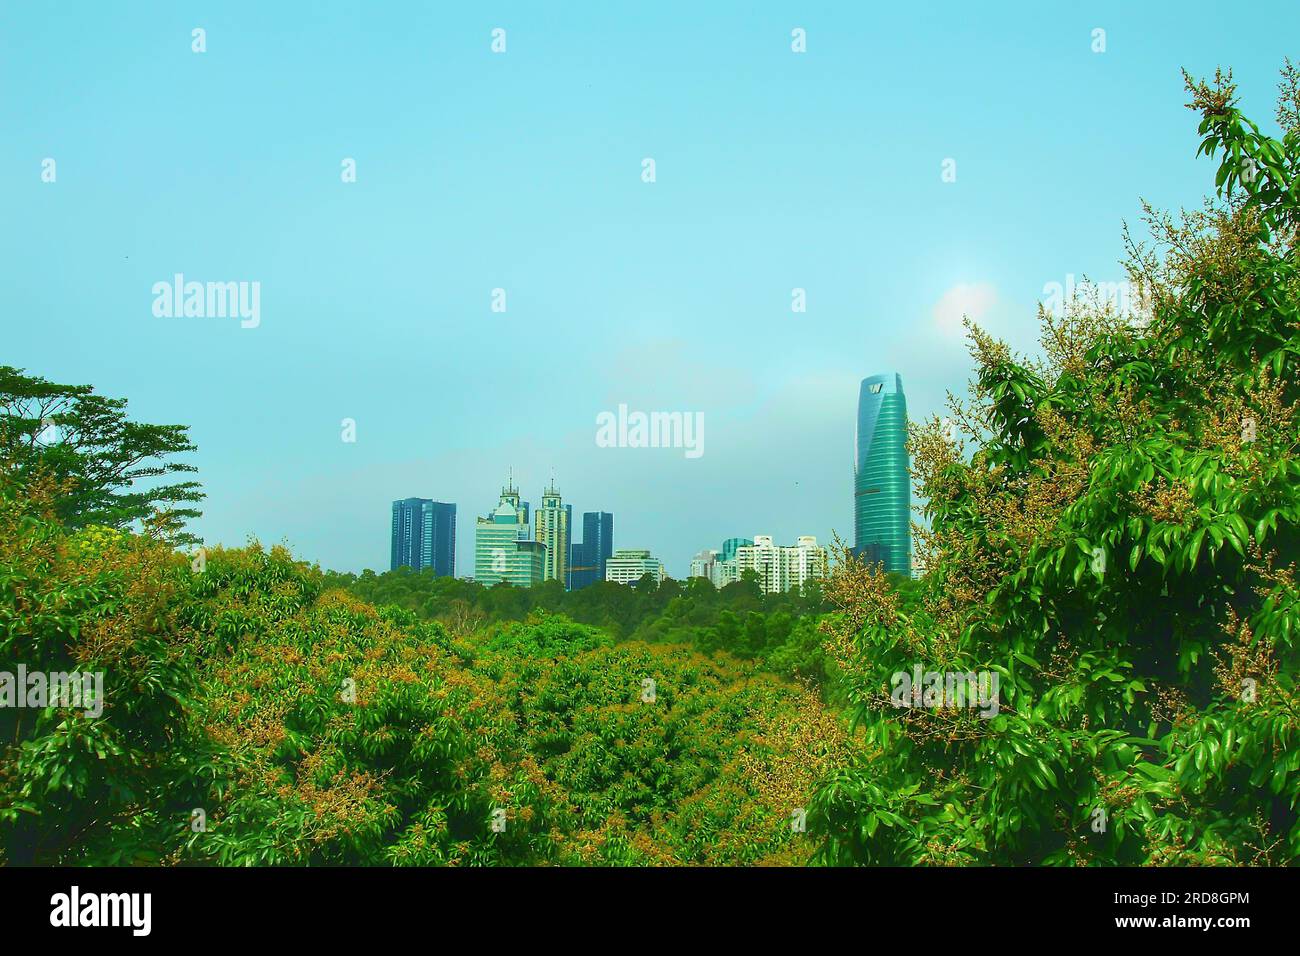 Ammira la bellezza di un accattivante grattacielo cinese, con la sua silhouette elegante che si erge al di sotto di un vivace cielo blu, crogiolandosi nel glorioso sole Foto Stock